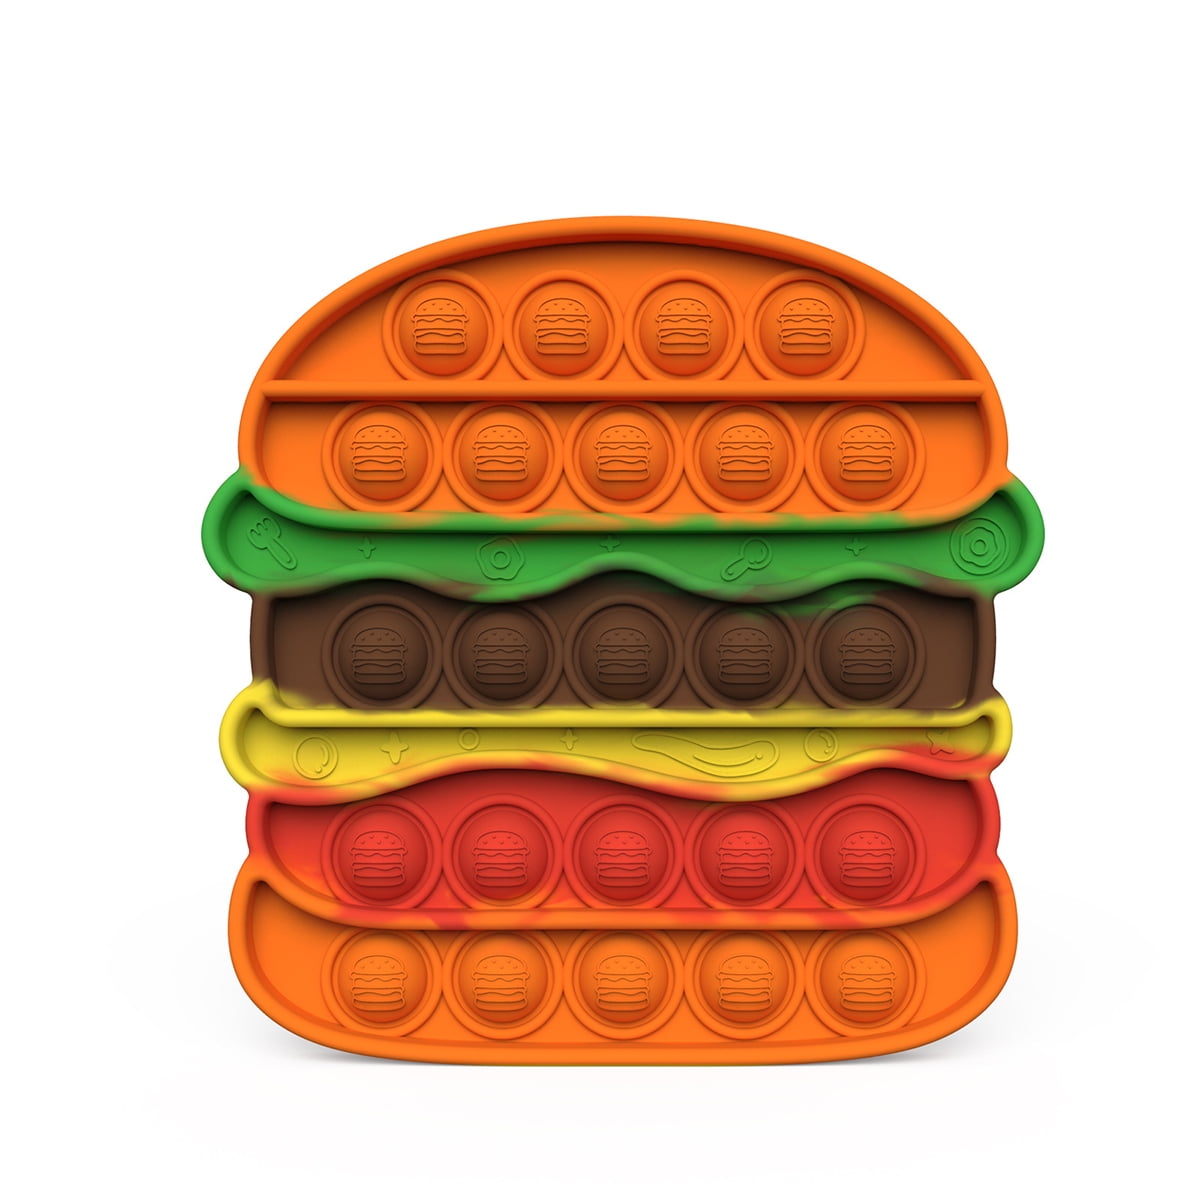 Stress relief toys hamburger à presser l'autisme tdah tactile besoins spéciaux sensorielle 